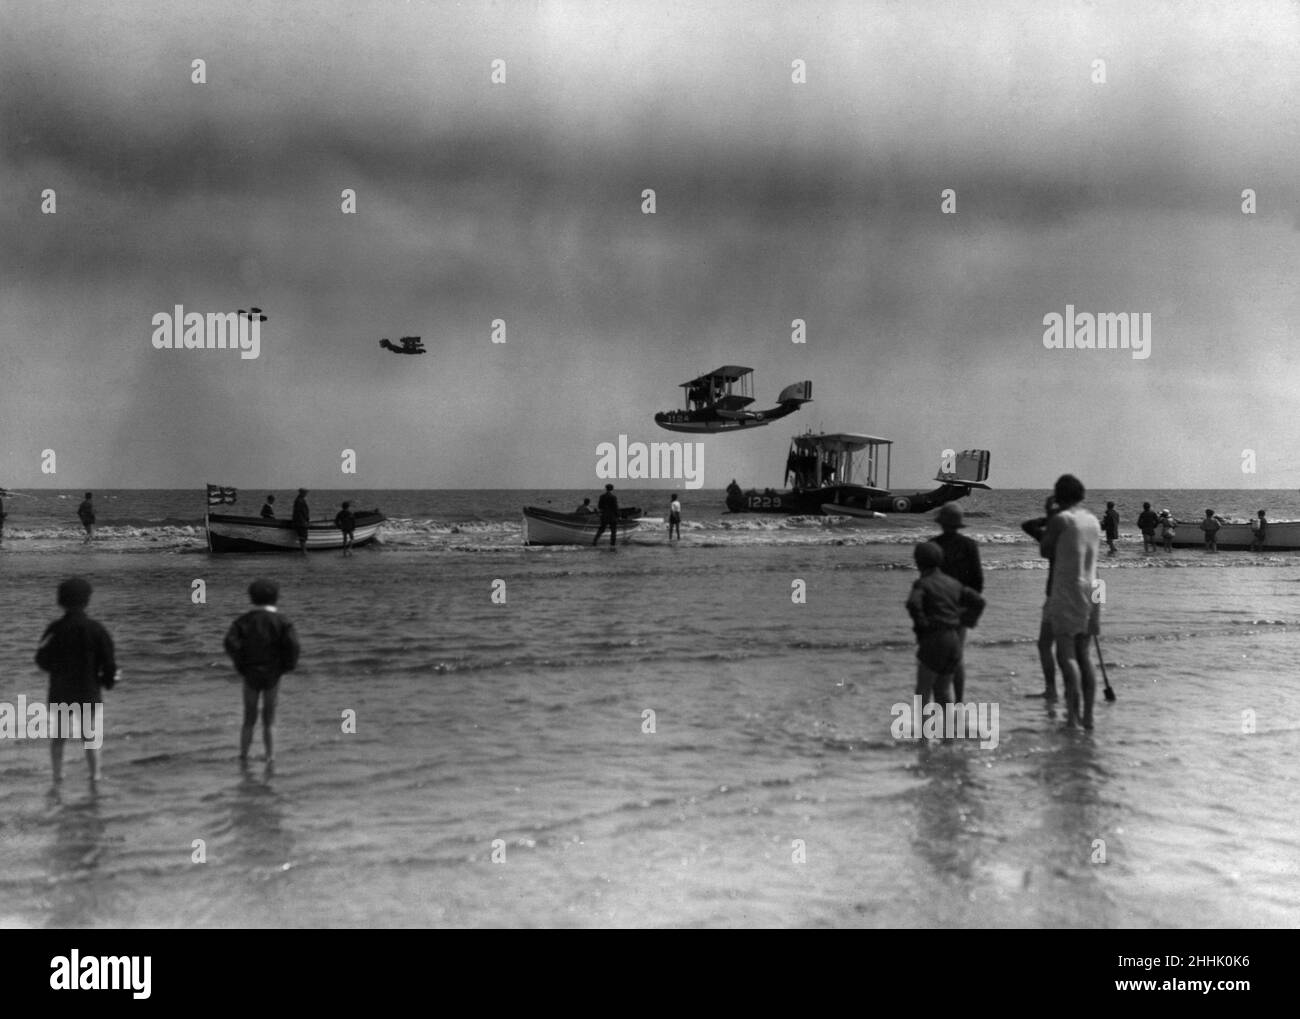 Supermarine Southampton, bateaux volants vus pendant un vol au large des plages de Skegness.Vers juin 1933 Banque D'Images